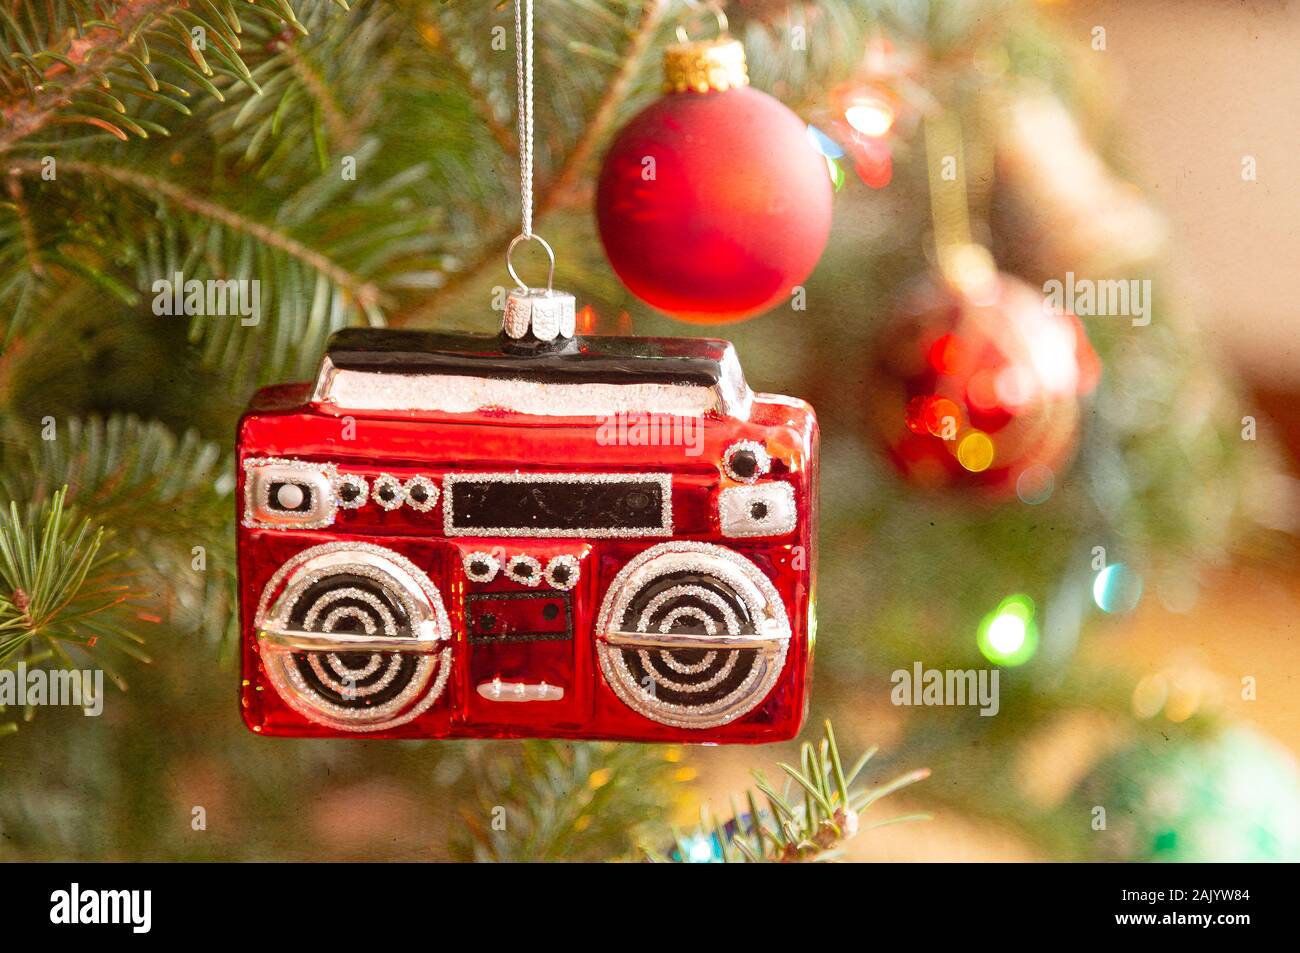 Un ornamento di Natale nella forma di una radio o di un boom box appeso a un albero di Natale. Aggiunta di texture. Foto Stock